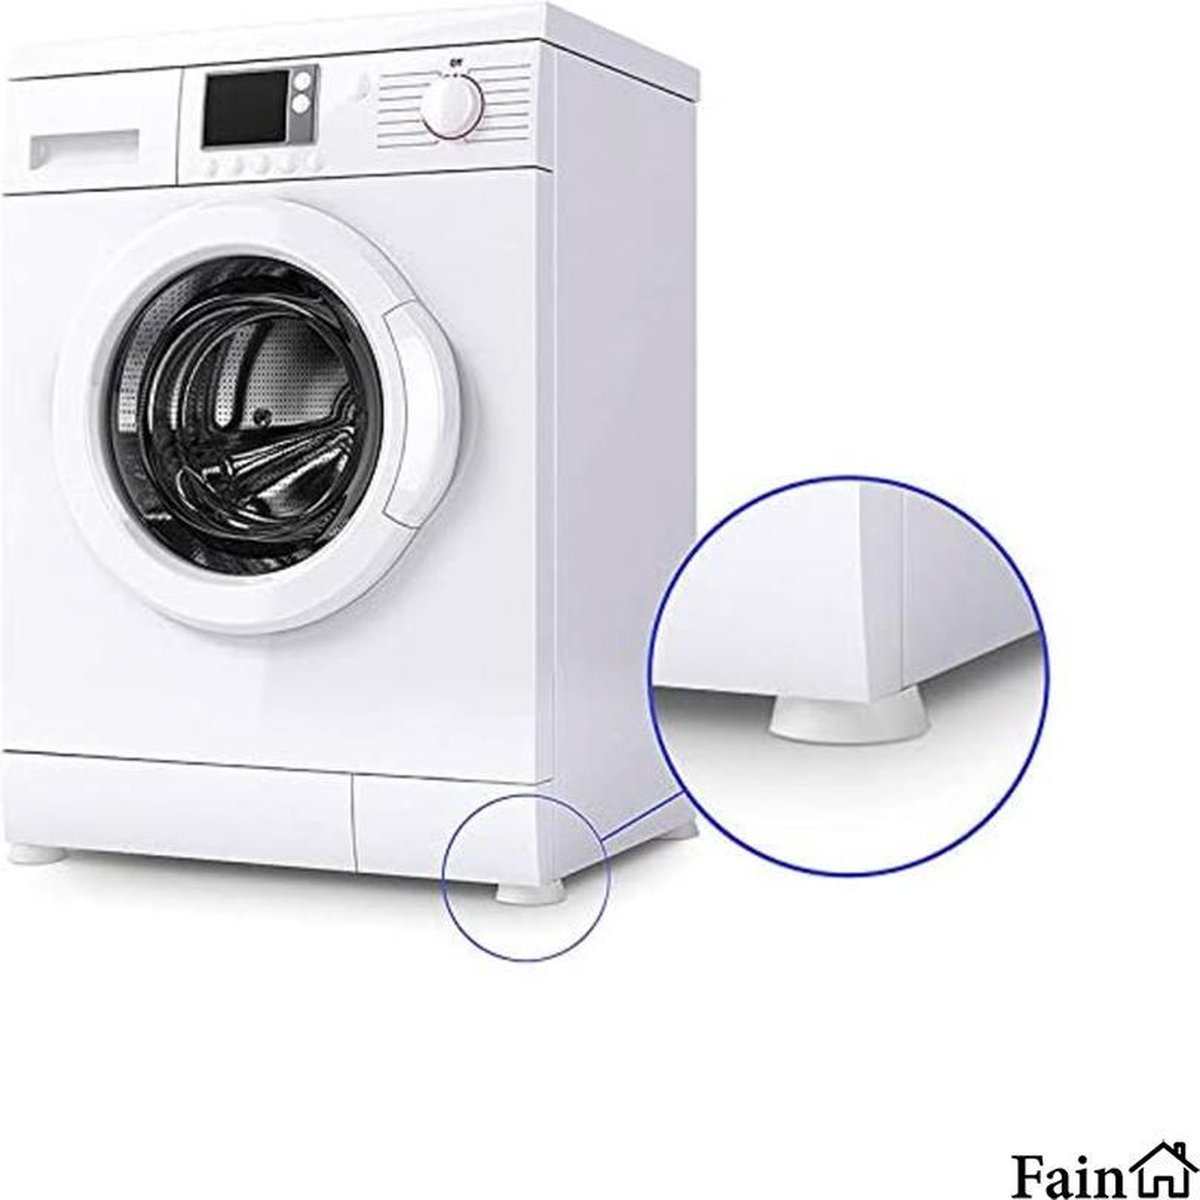 Trillingsdempers wasmachine – Set van 4 stuks – Wit - Voetjes wasmachine & droger - Wasmachine demper – Anti trillings / vibratie dempers pads – Antislip rubber – Trillingsmat – Antislipmat - Schokdempers wasmachine - Merkloos